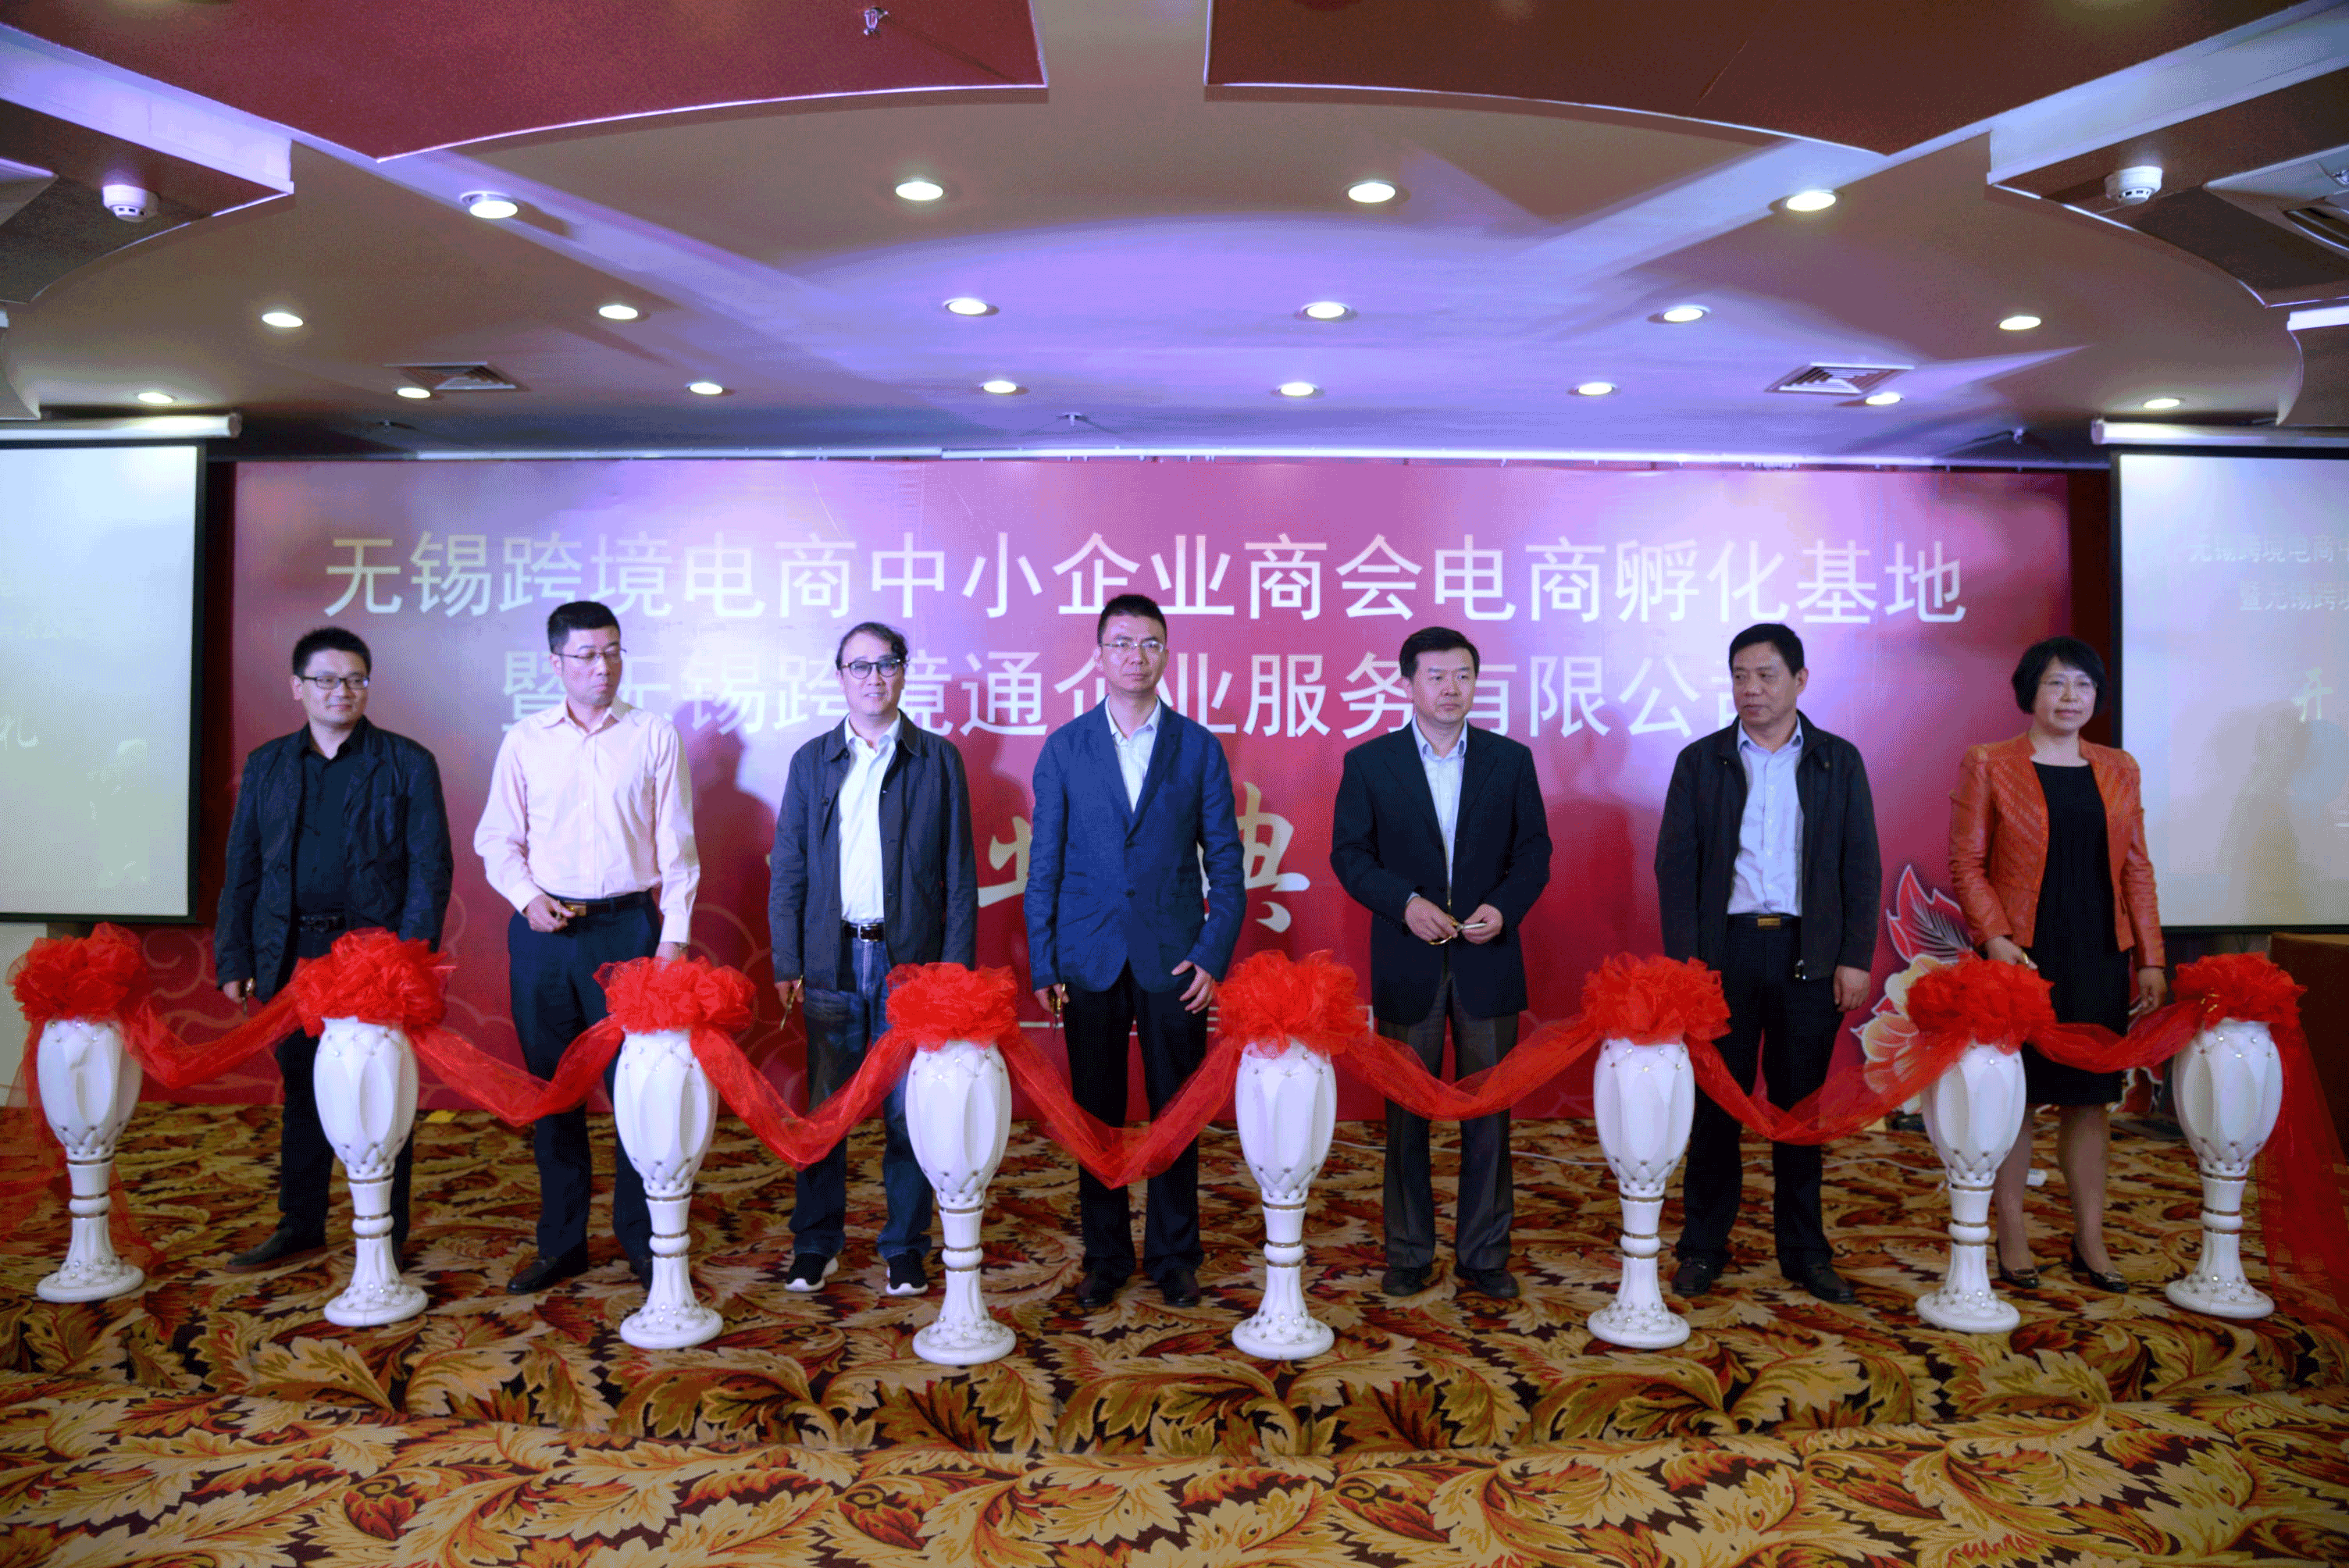 Eröffnungsfeier der Wuxi United grenzüberschreitende E-Commerce-Inkubator-Basis